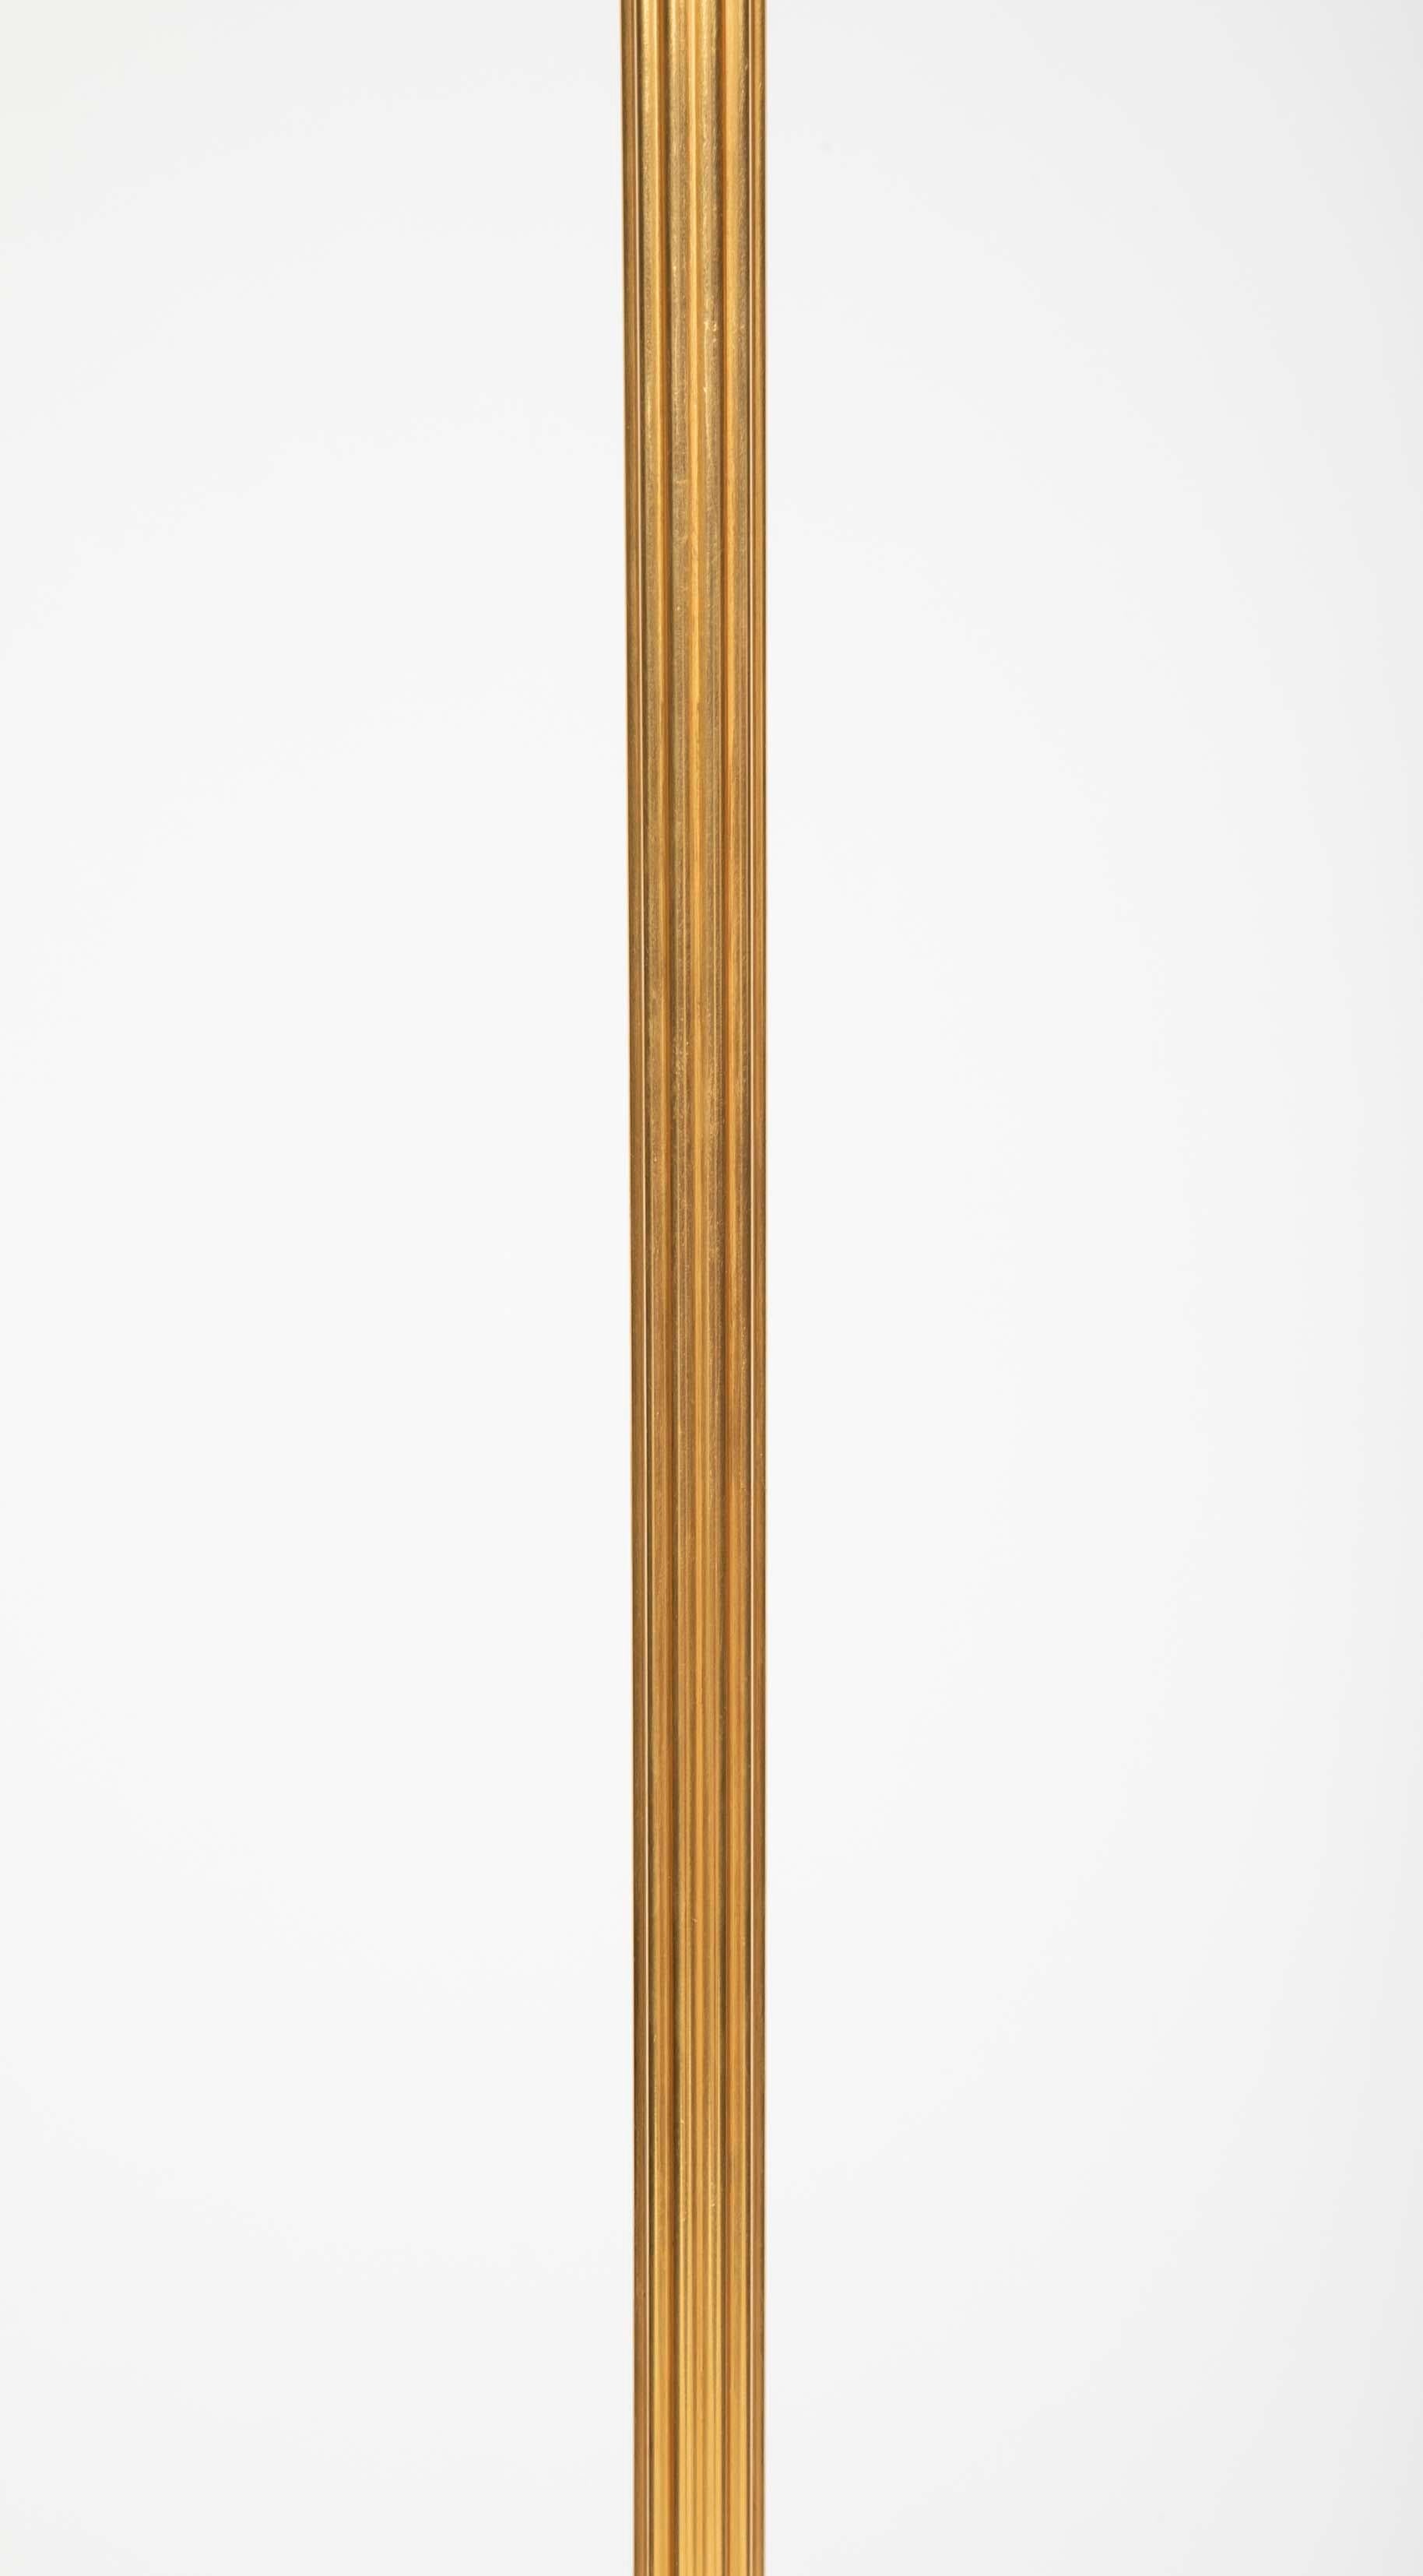 A Maison Meilleur Gilded Bronze Swing-Arm Lamps 1